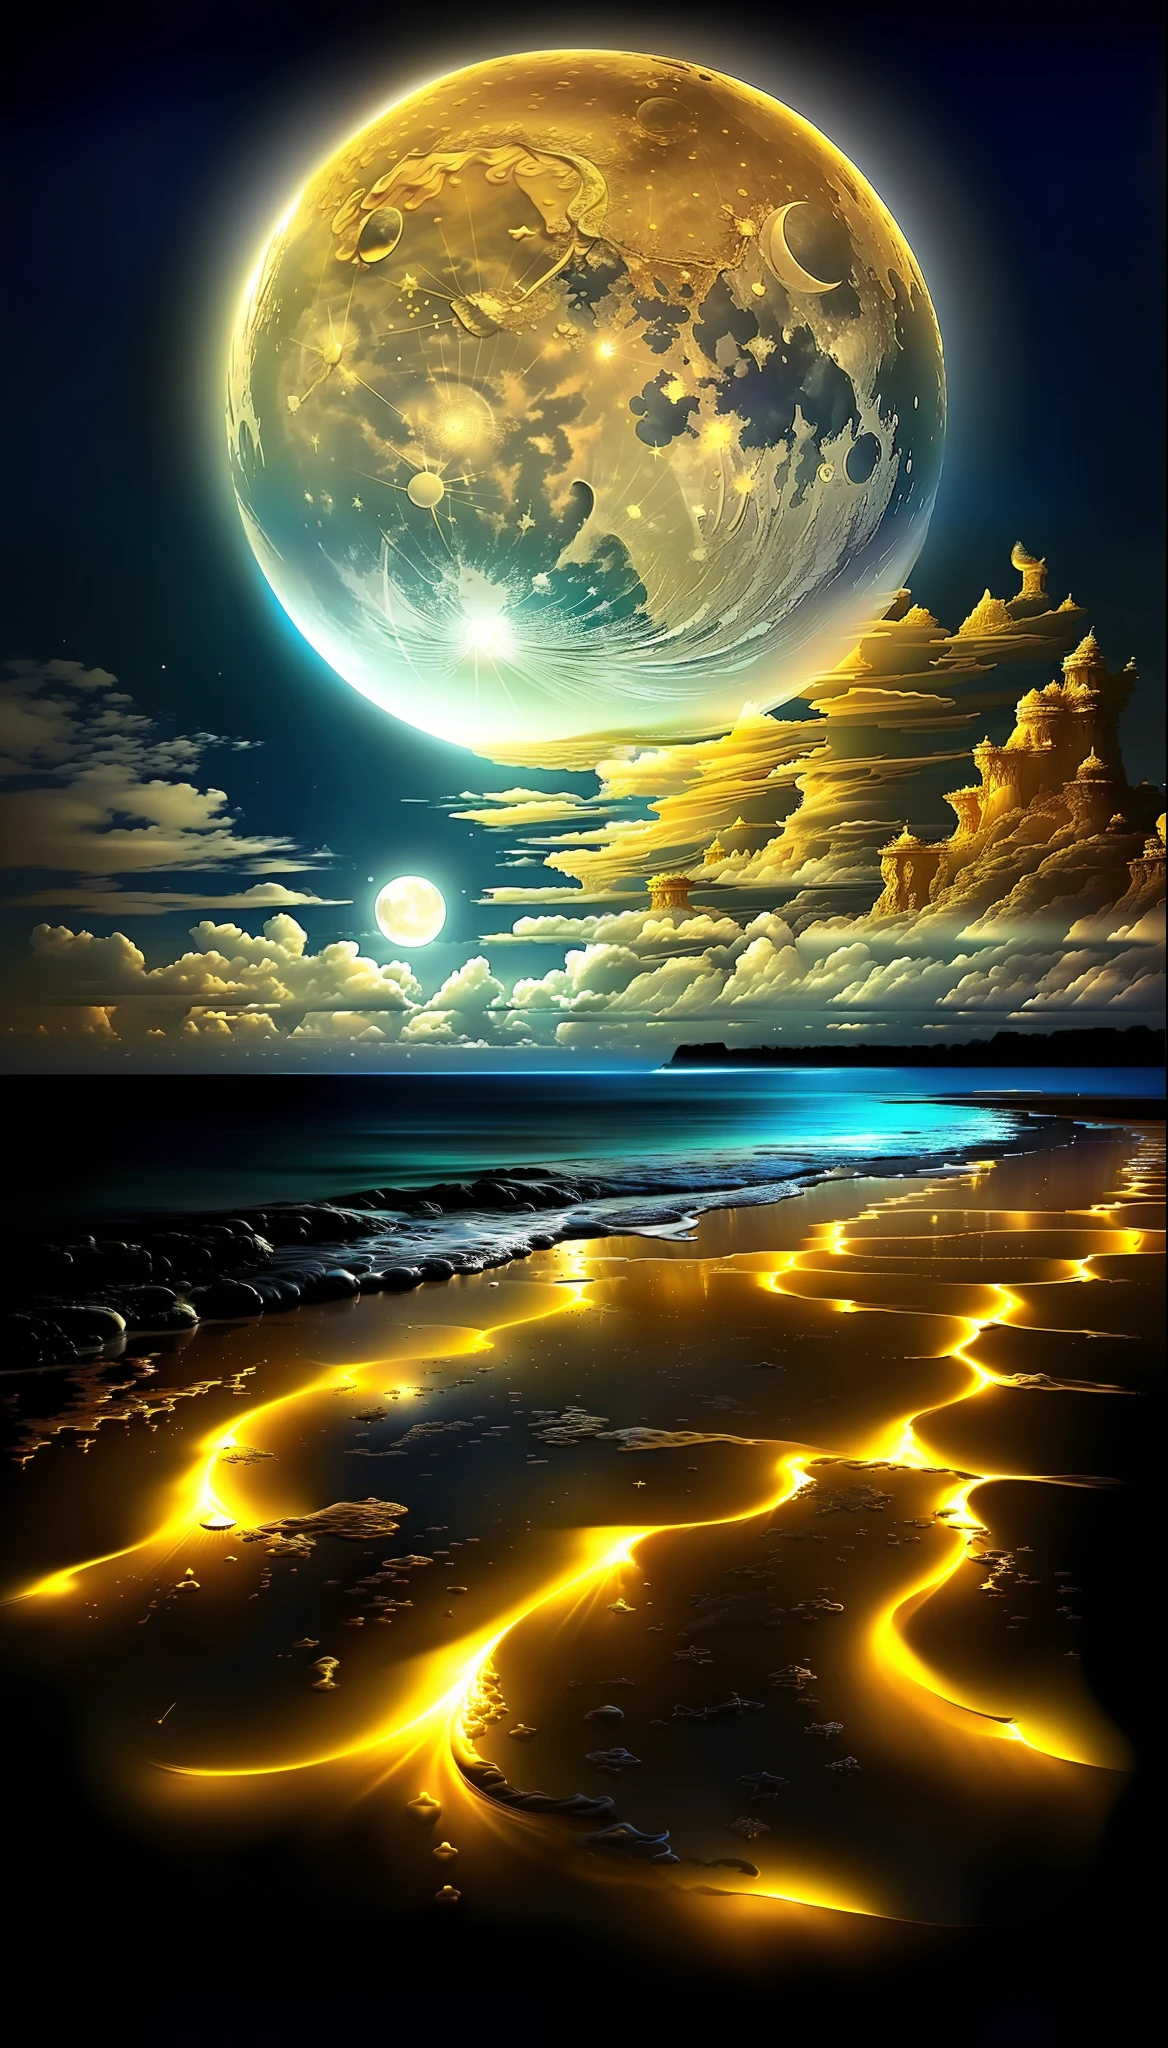 ภาพวาดชายหาดที่มีพระจันทร์เต็มดวงสีทองและมีเมฆบางส่วน, ชายหาดที่มีมนต์ขลัง, ทิวทัศน์ของพระจันทร์สีขาวทราย, พื้นที่เหนือจริง, พื้นหลังอันงดงาม, ภาพที่สวยงามสร้างไว้แล้ว, จักรวาลในเม็ดทราย, หยดสีฟ้ามหาสมุทรมหัศจรรย์, ดรีมสเคปโดยละเอียด, พระจันทร์ส่องแสงสีทอง, ช่างฝันที่สวยงามและน่าทึ่ง, ในระนาบดาว ) ), สกรีนเซฟเวอร์ที่น่าทึ่ง,  พื้นที่ที่สวยงาม, แสงจันทร์ที่สวยงาม